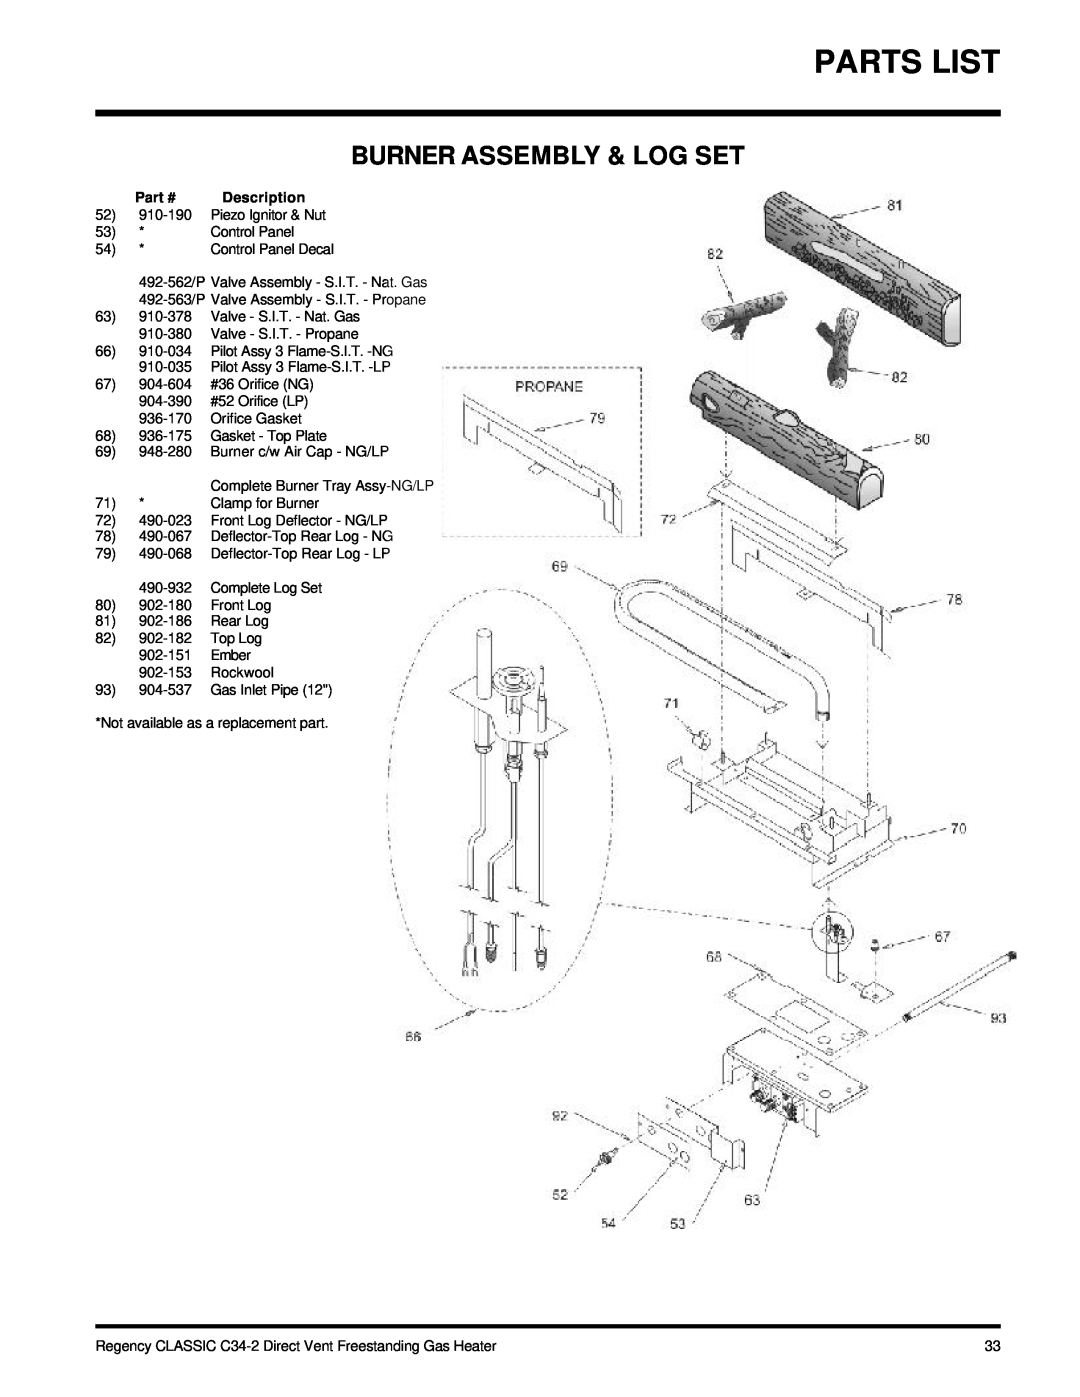 Regency C34-LP2, C34-NG2 installation manual Parts List, Burner Assembly & Log Set, Description 